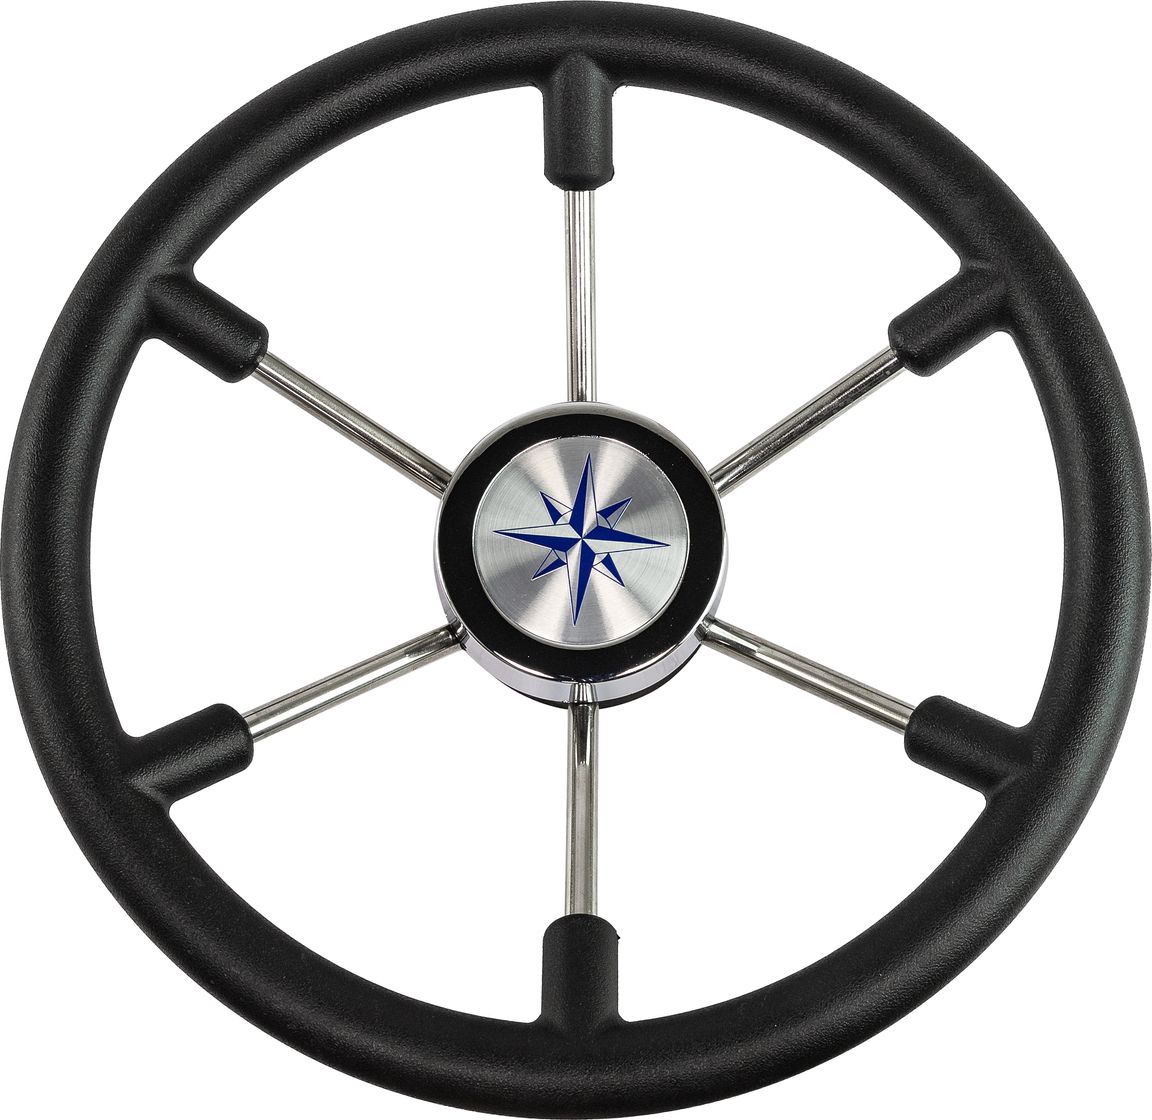 Рулевое колесо LEADER PLAST черный обод серебряные спицы д. 360 мм VN8360-01 рулевое колесо delfino обод спицы серебряные д 340 мм vn70401 01